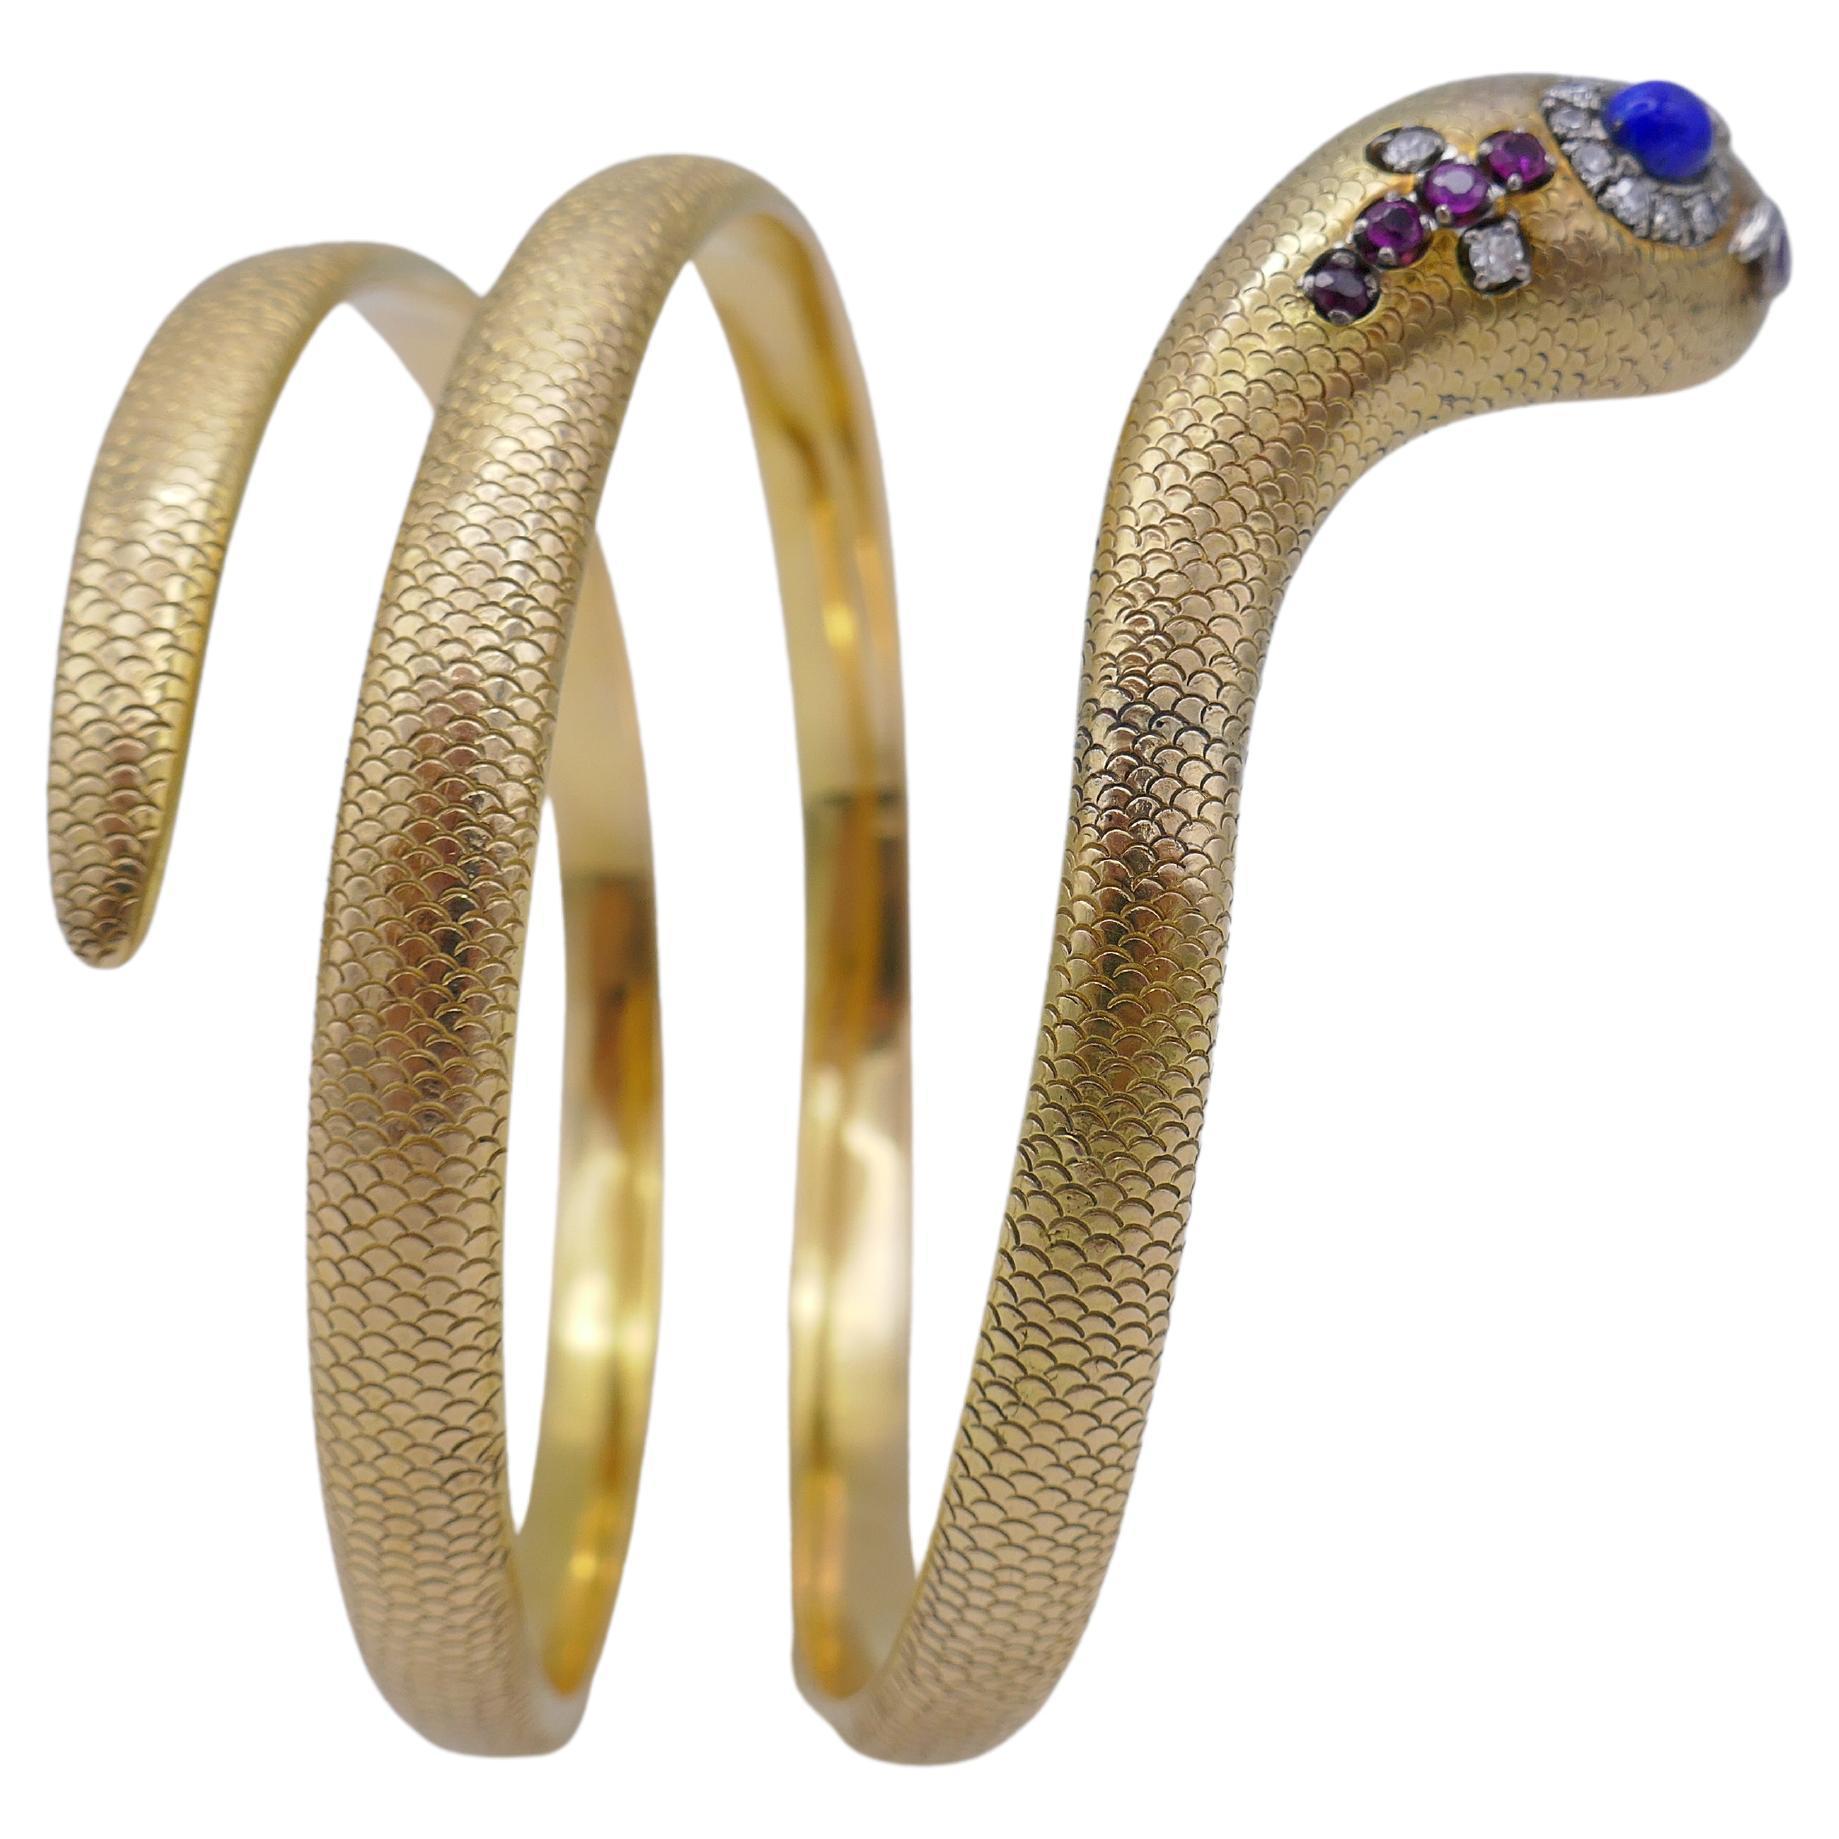 Un exquis bracelet serpent, en or, avec des pierres précieuses.
Le bracelet est conçu comme un serpent ascendant, dont la tête est décorée par le lapis, le diamant, le rubis et l'émeraude. La 